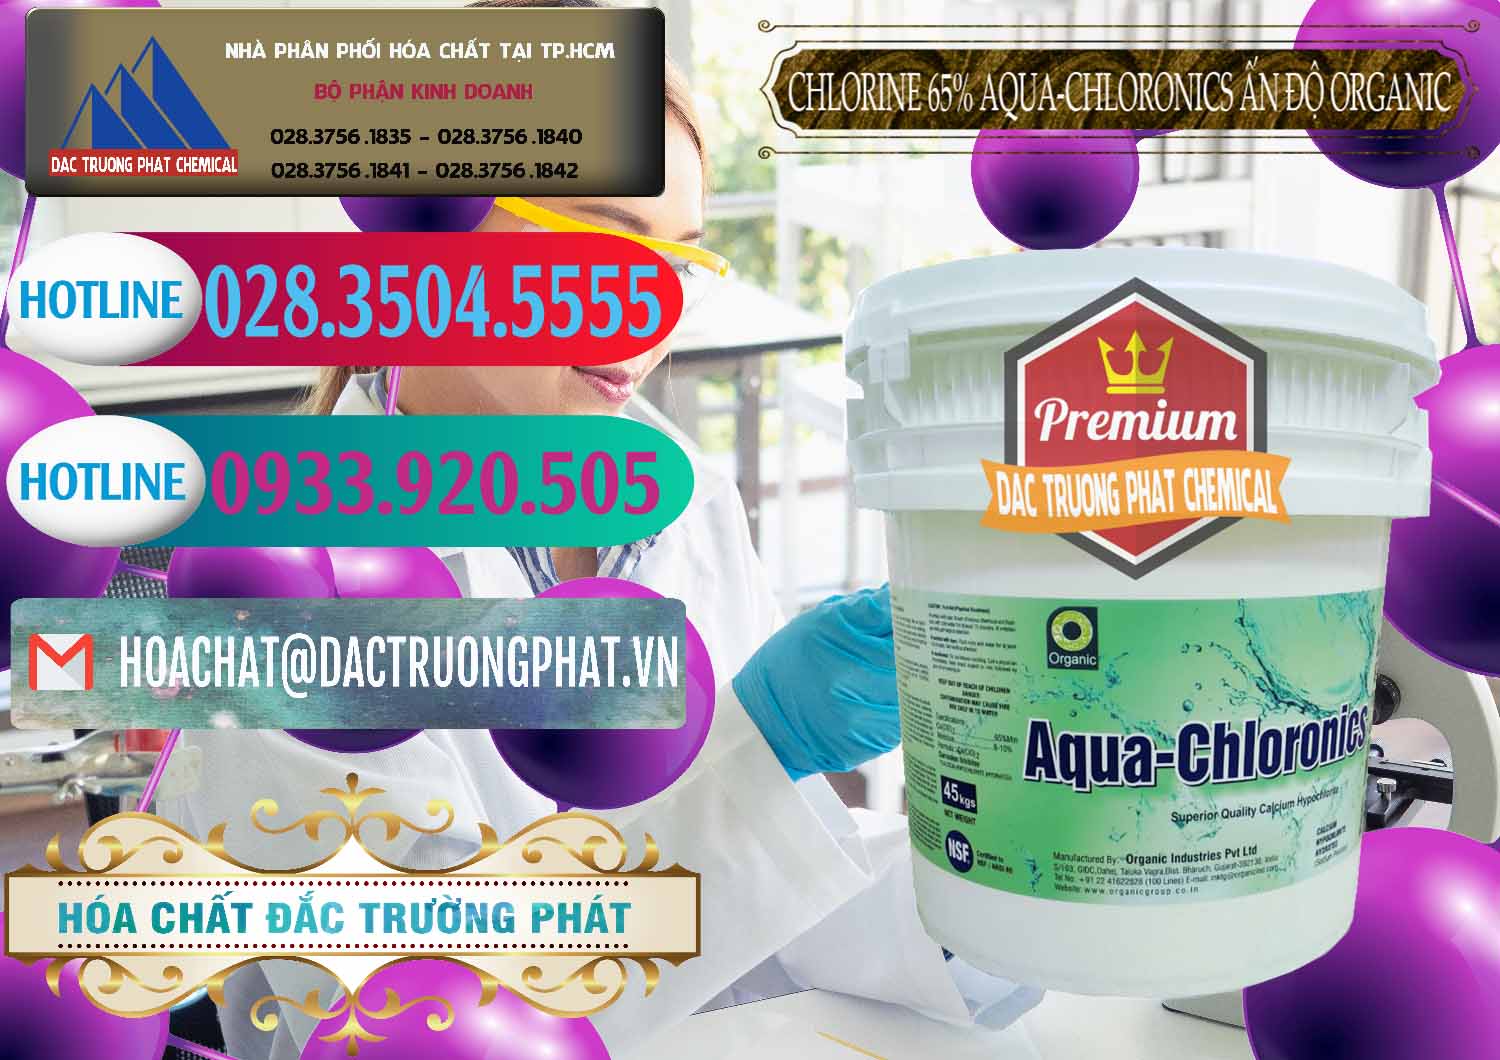 Nơi chuyên phân phối - bán Chlorine – Clorin 65% Aqua-Chloronics Ấn Độ Organic India - 0210 - Công ty chuyên bán và phân phối hóa chất tại TP.HCM - truongphat.vn